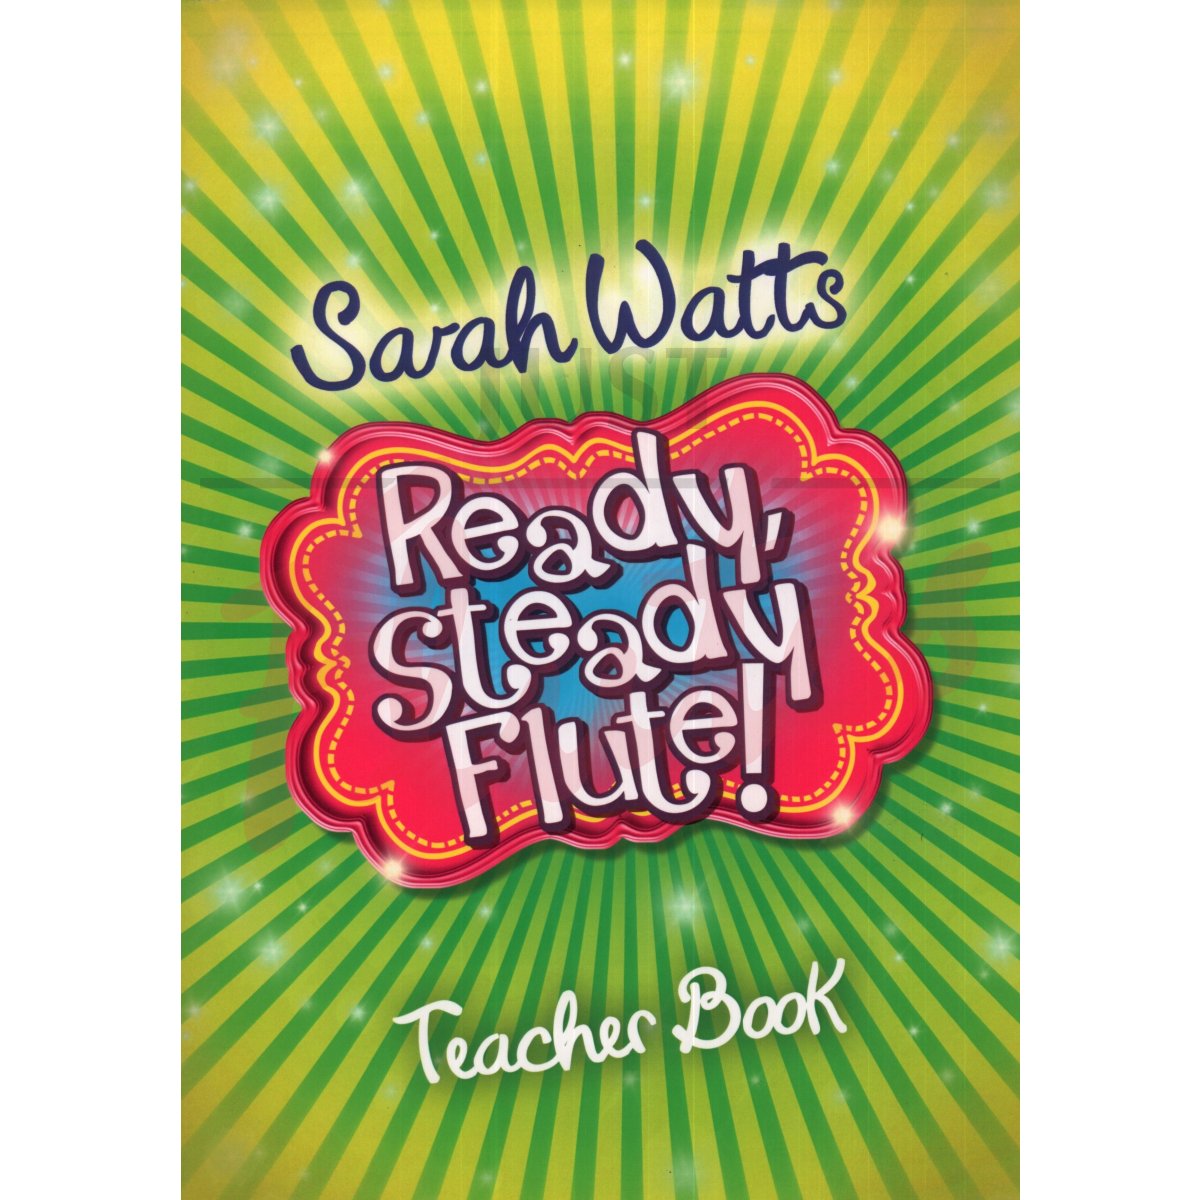 Ready, Steady Flute! [Teacher's Book]